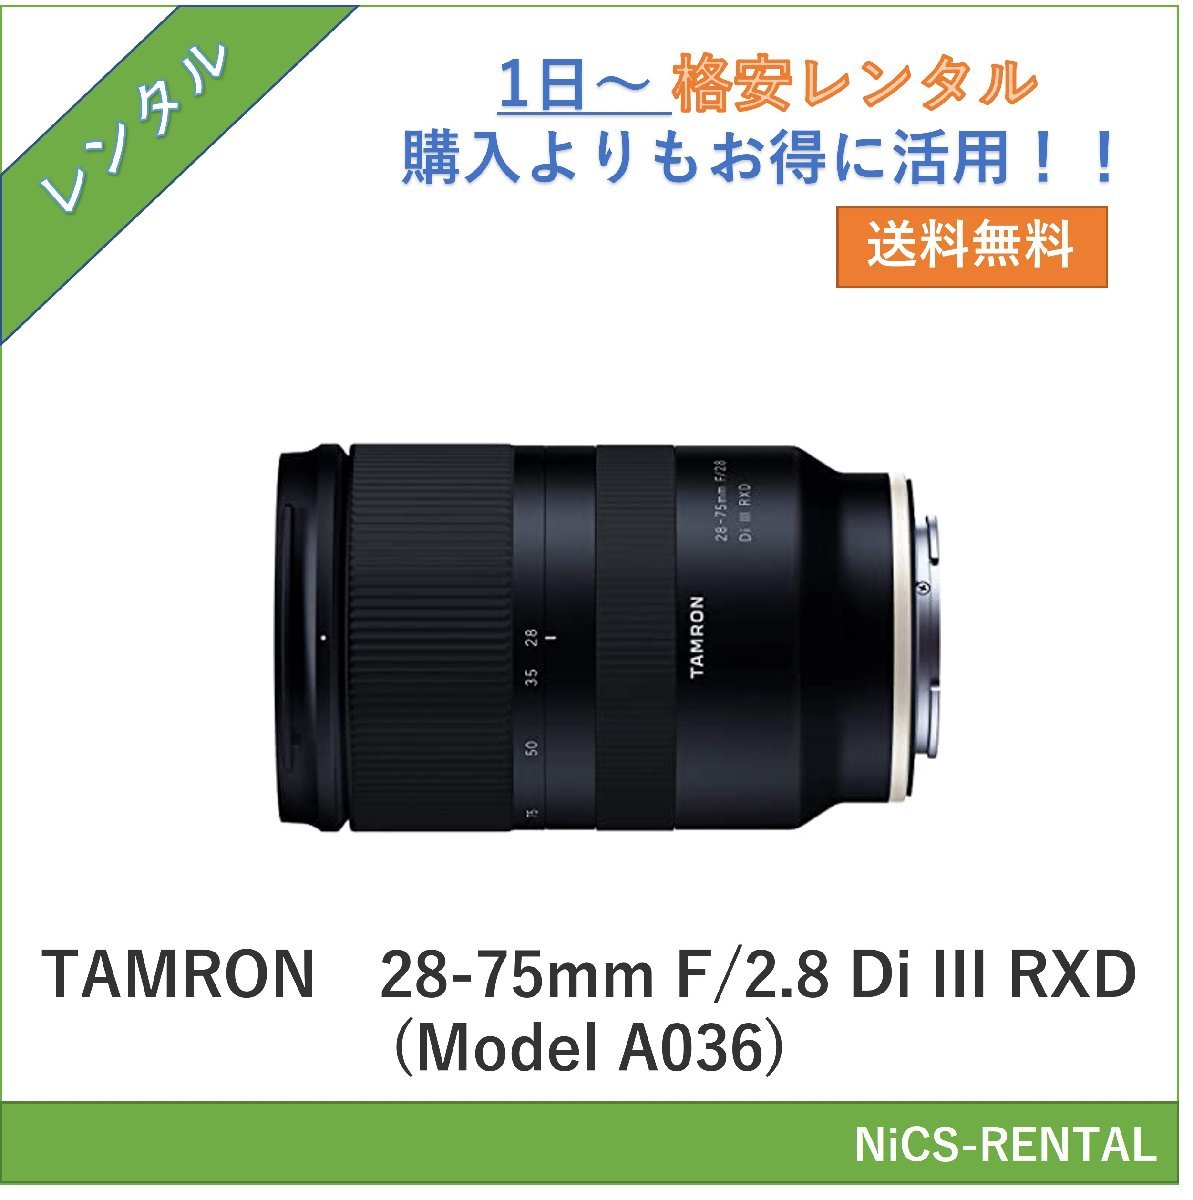 TAMRON 28-75mm F/2.8 Di III RXD (Model A036) オークション比較